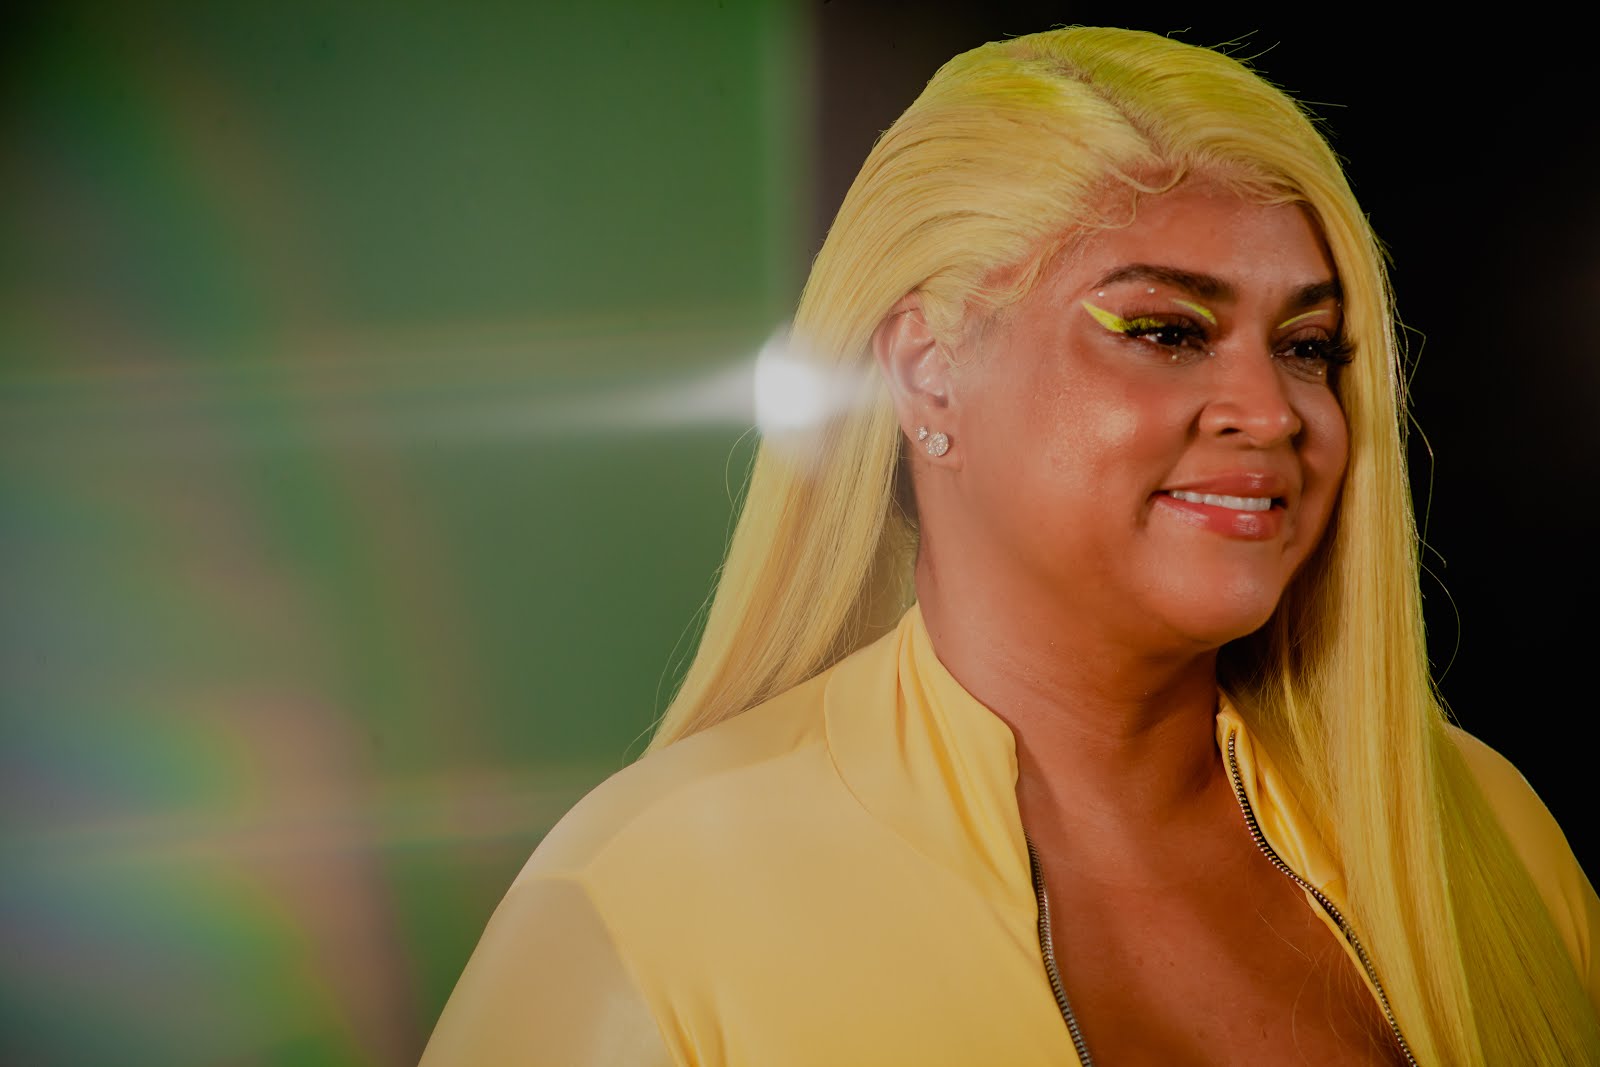 Confira o clipe de Só o Amor que Preta Gil e Gloria Groove lançam com série documental sobre mulheres transexuais - Em Neon picture